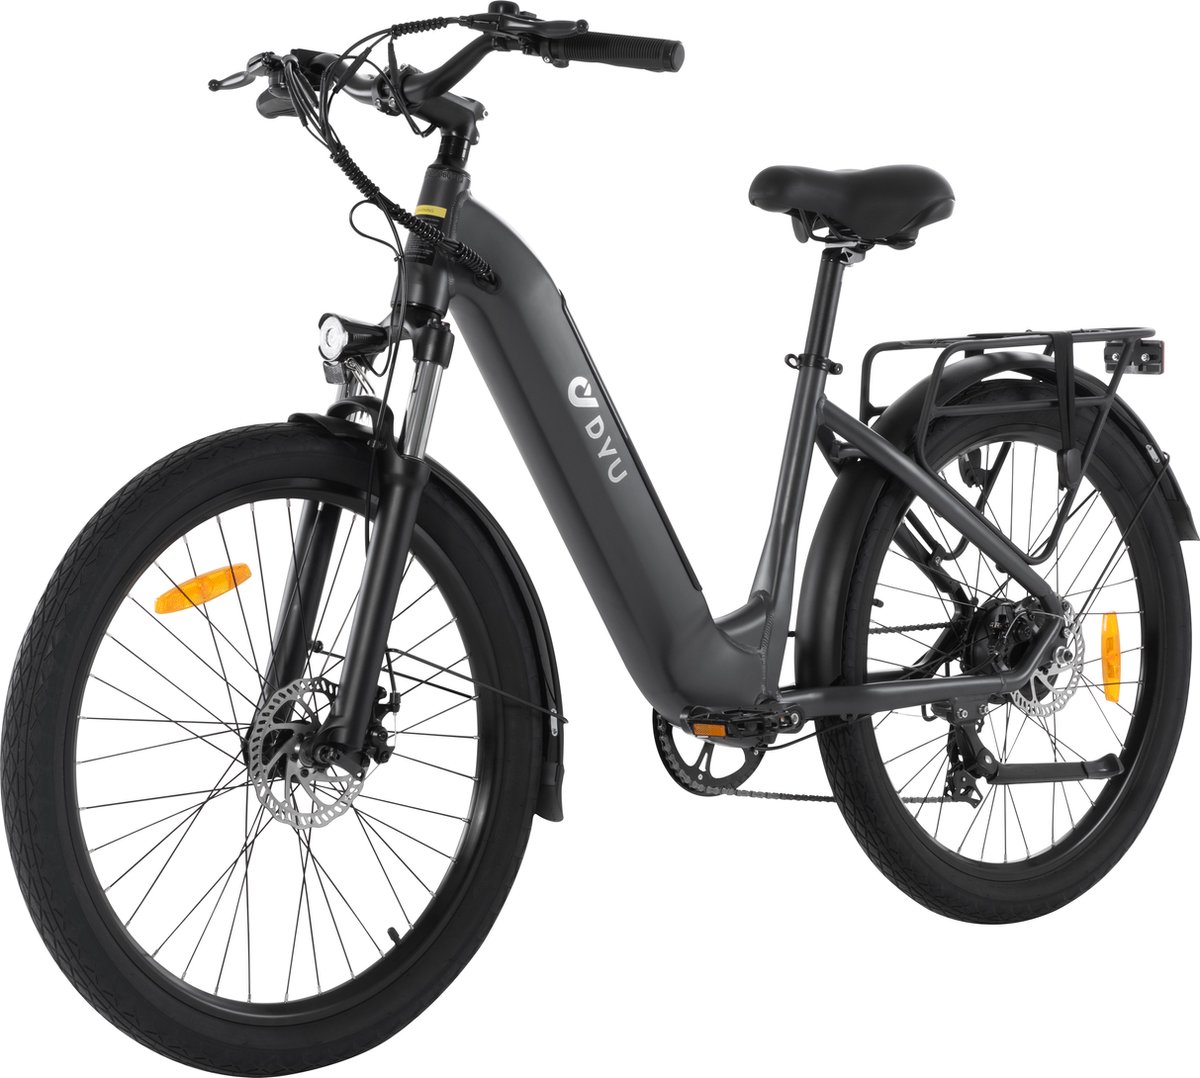 DYU C1 opvouwbare e-bike 250 watt motorvermogen topsnelheid 25 km/u Fat tire 26’’ banden 7 versnellingen